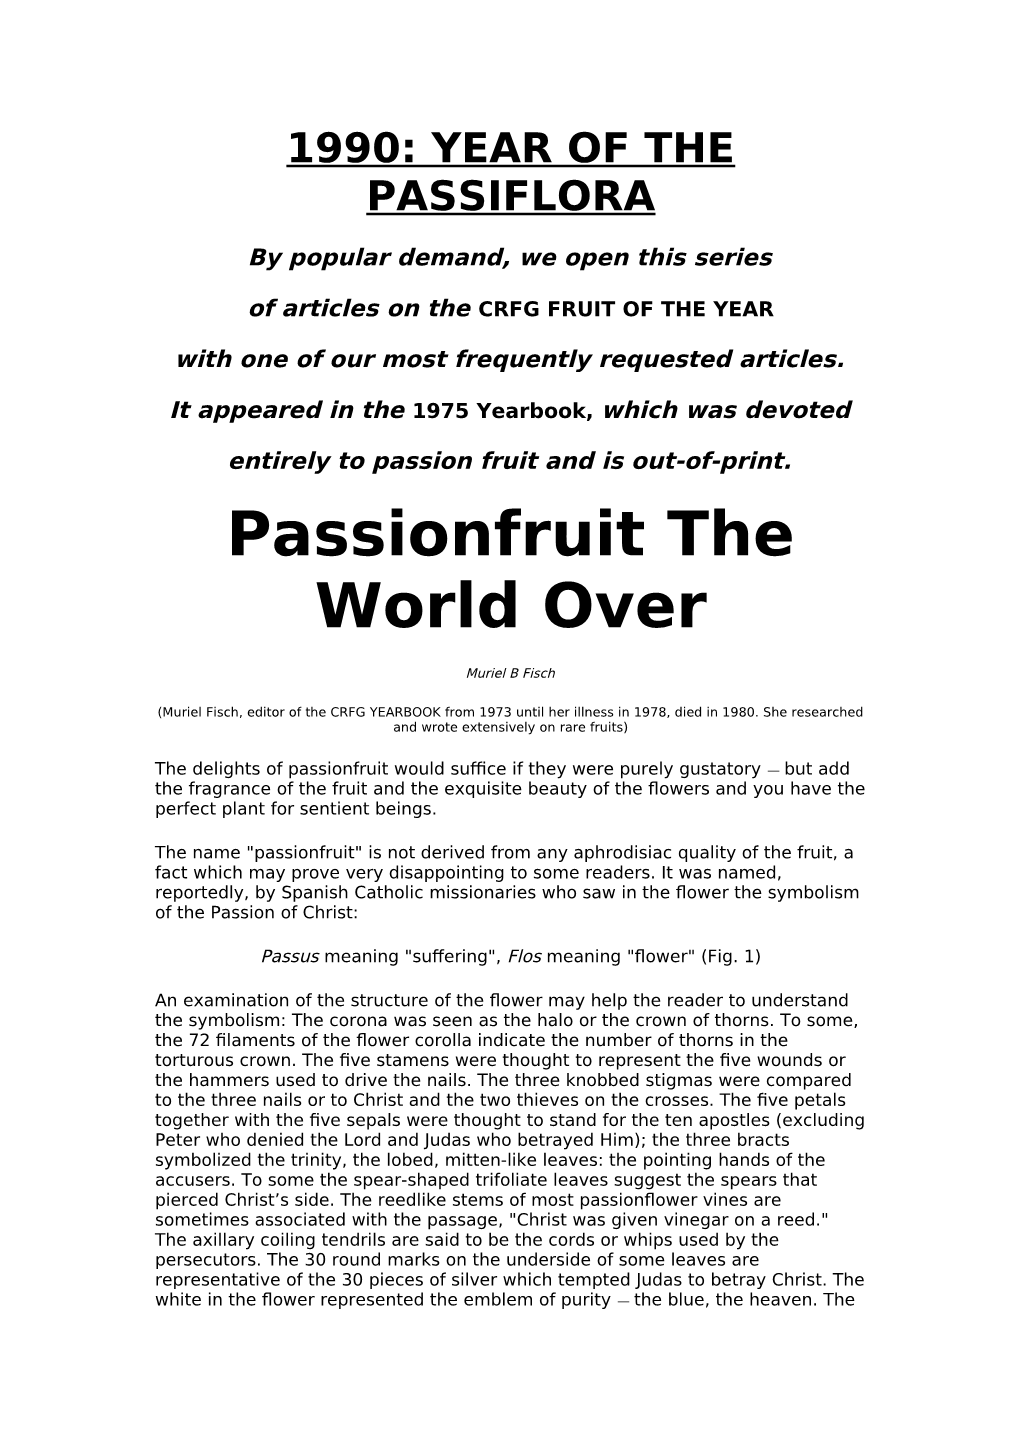 1990: Year of the Passiflora